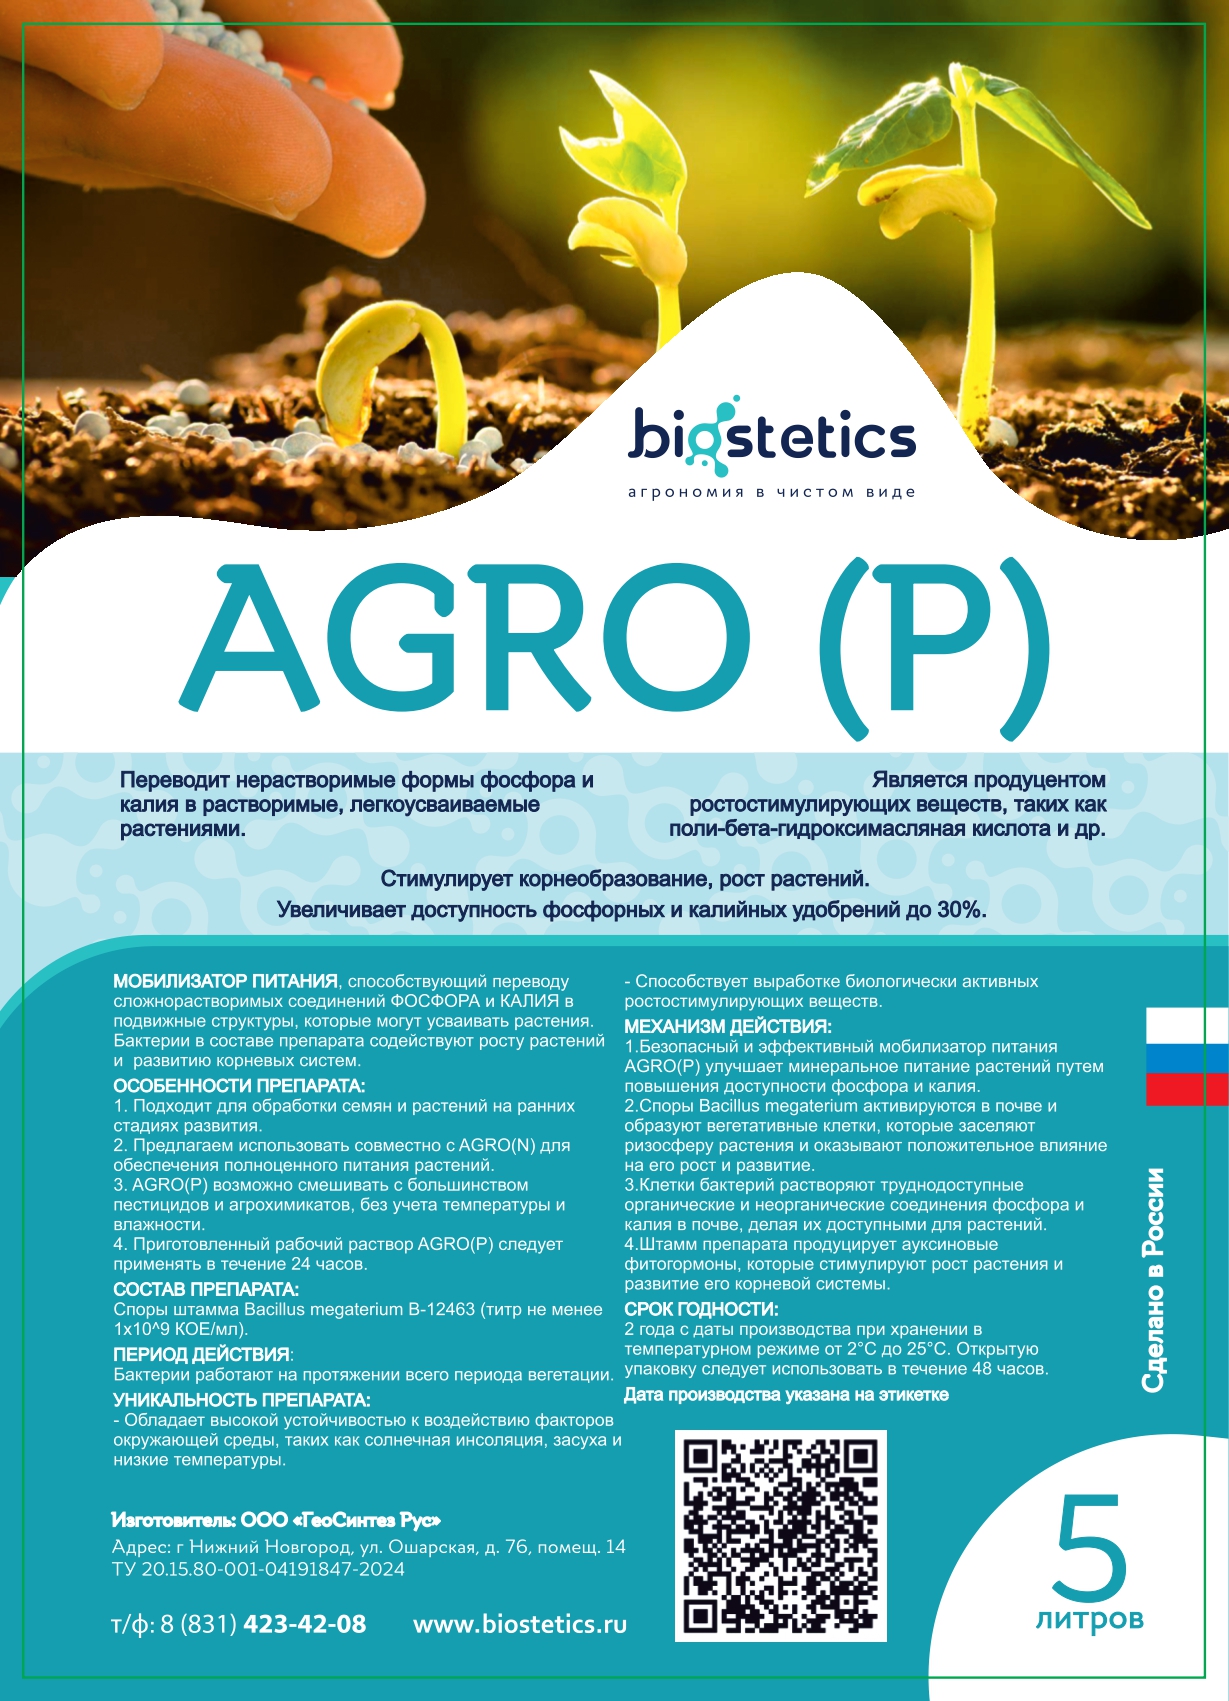 "Agro P" микробиологическое удобрение, мобилизатор питания - Фосфор и Калий